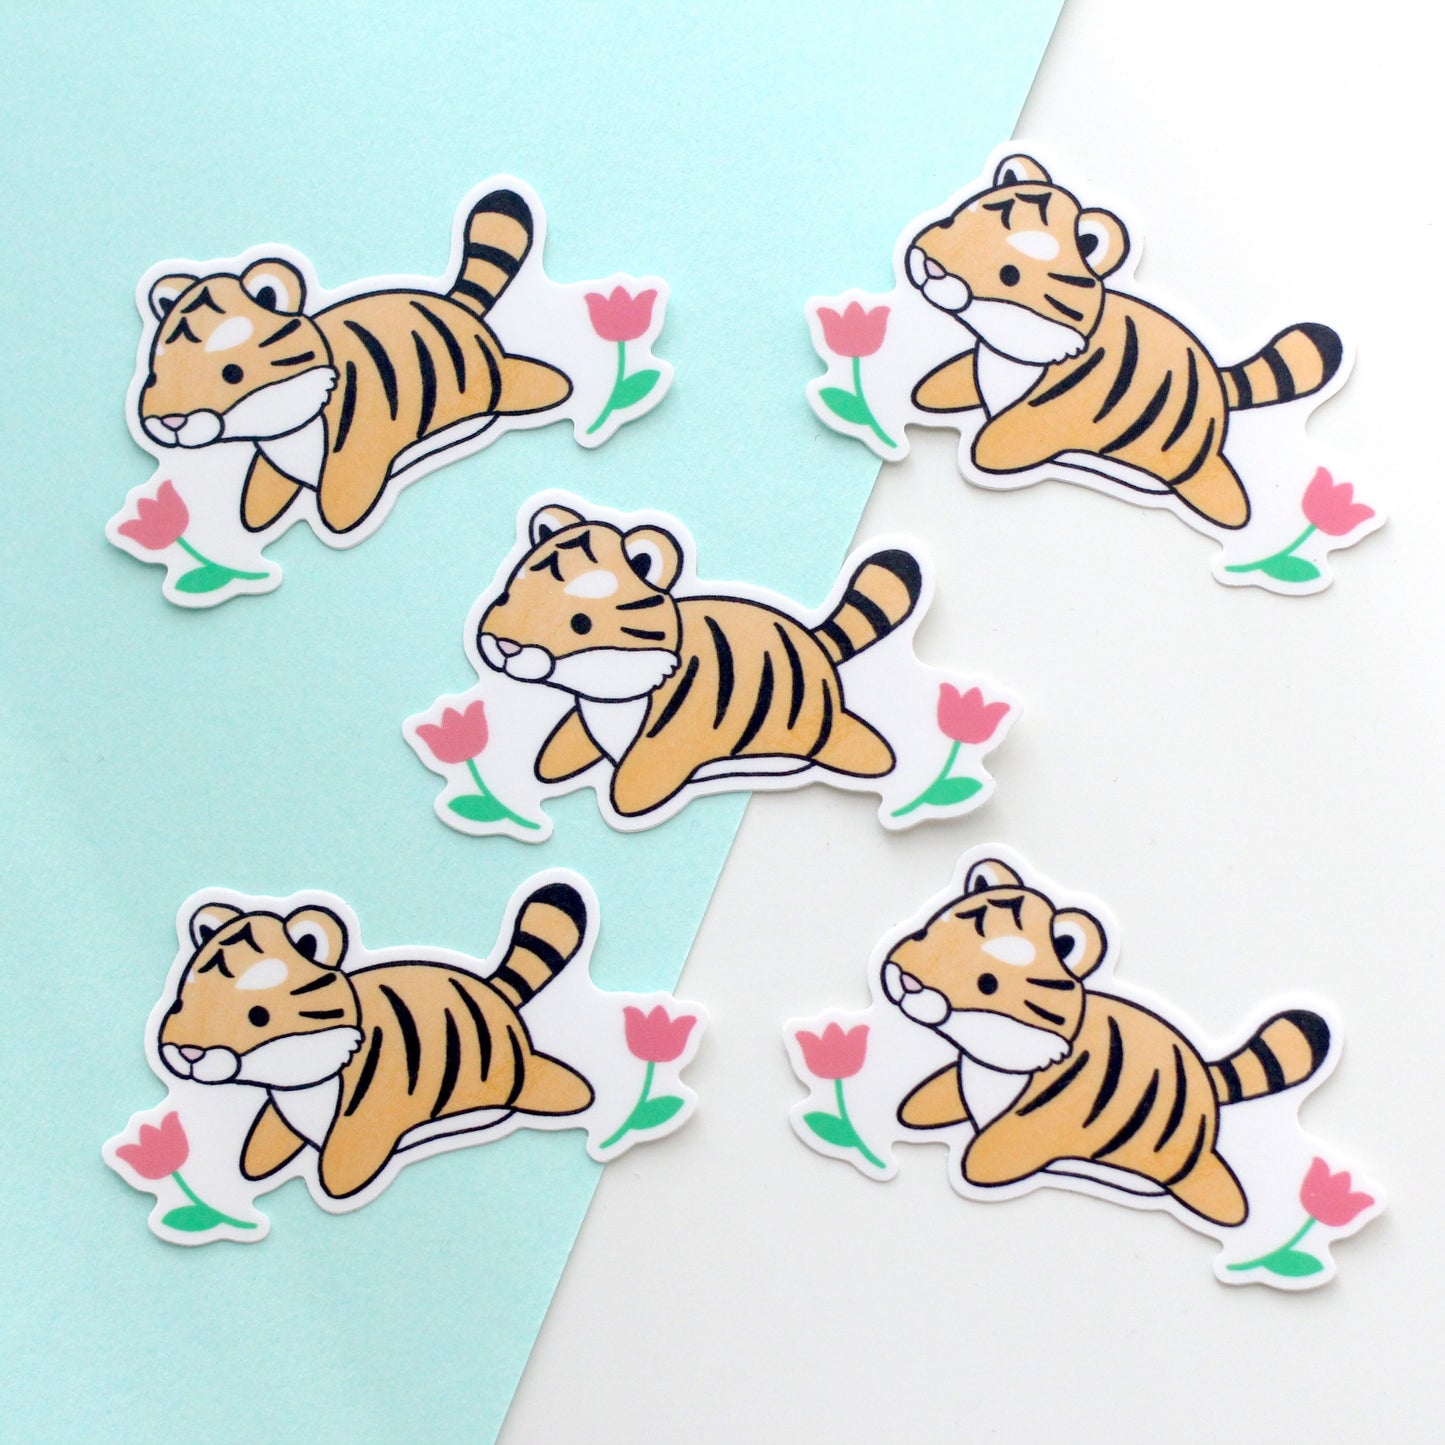 Tiger Vinyl Sticker. Tiger Stationery